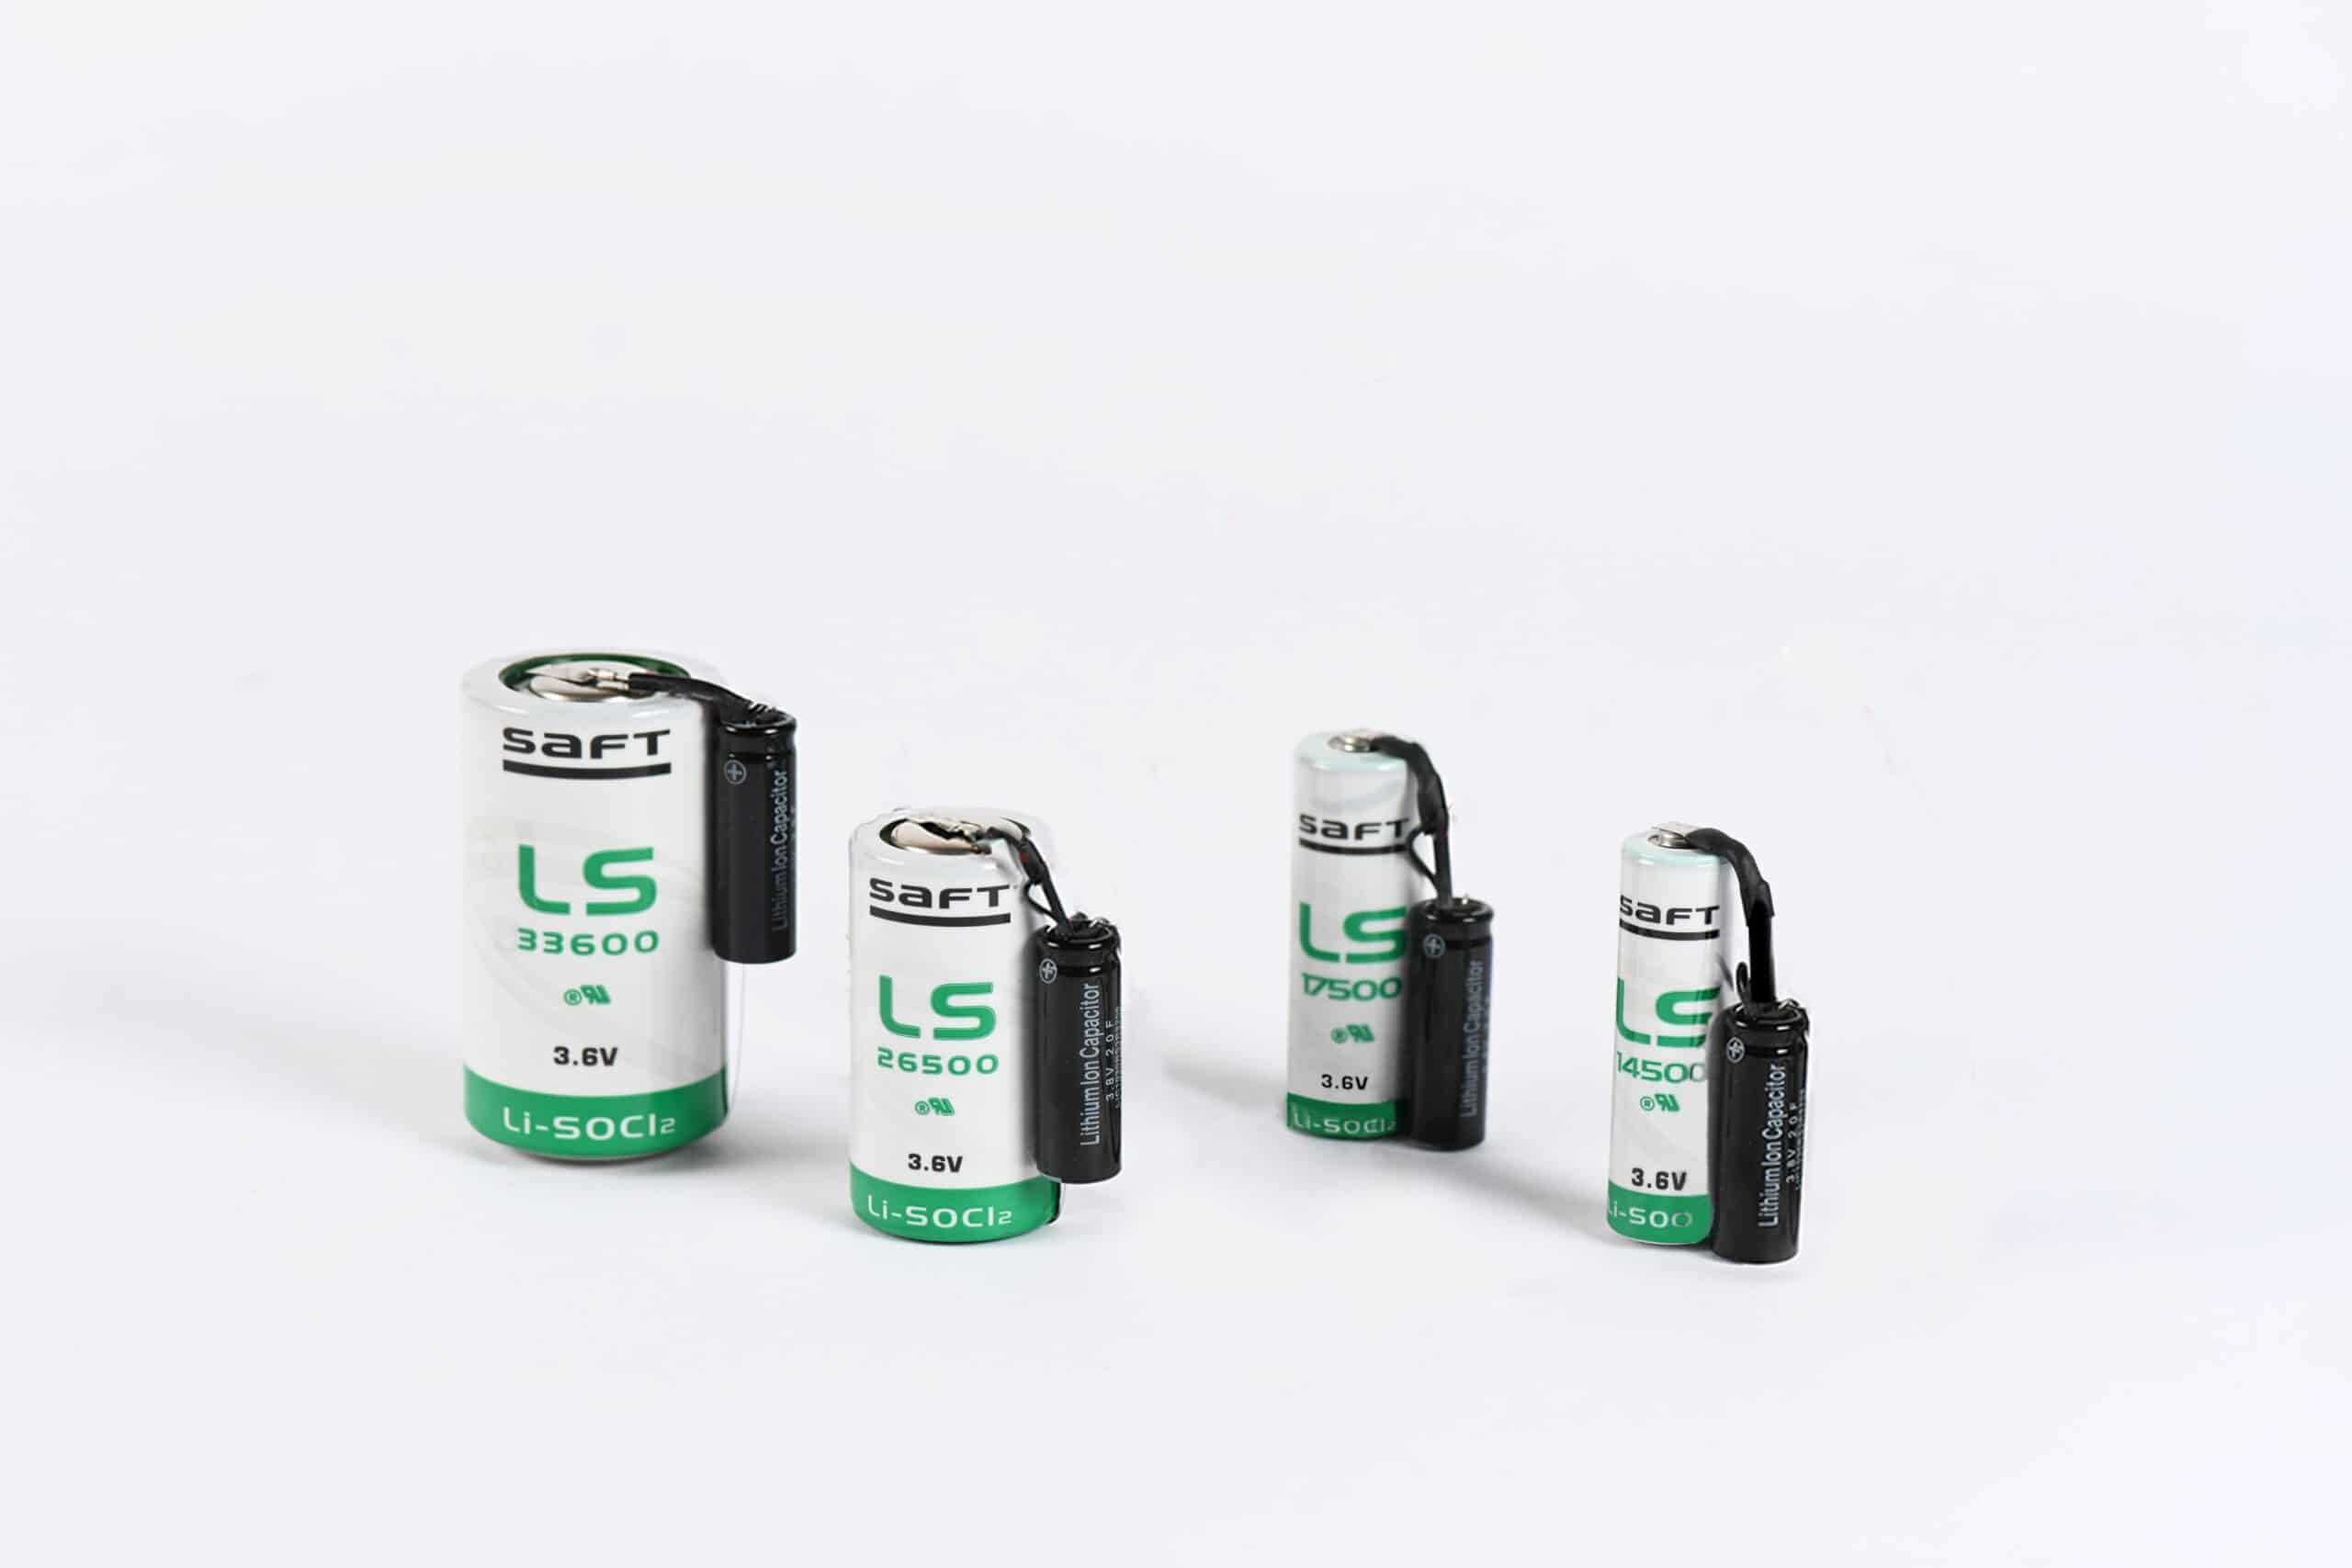 Batería de litio 3,6V LS33600, Saft